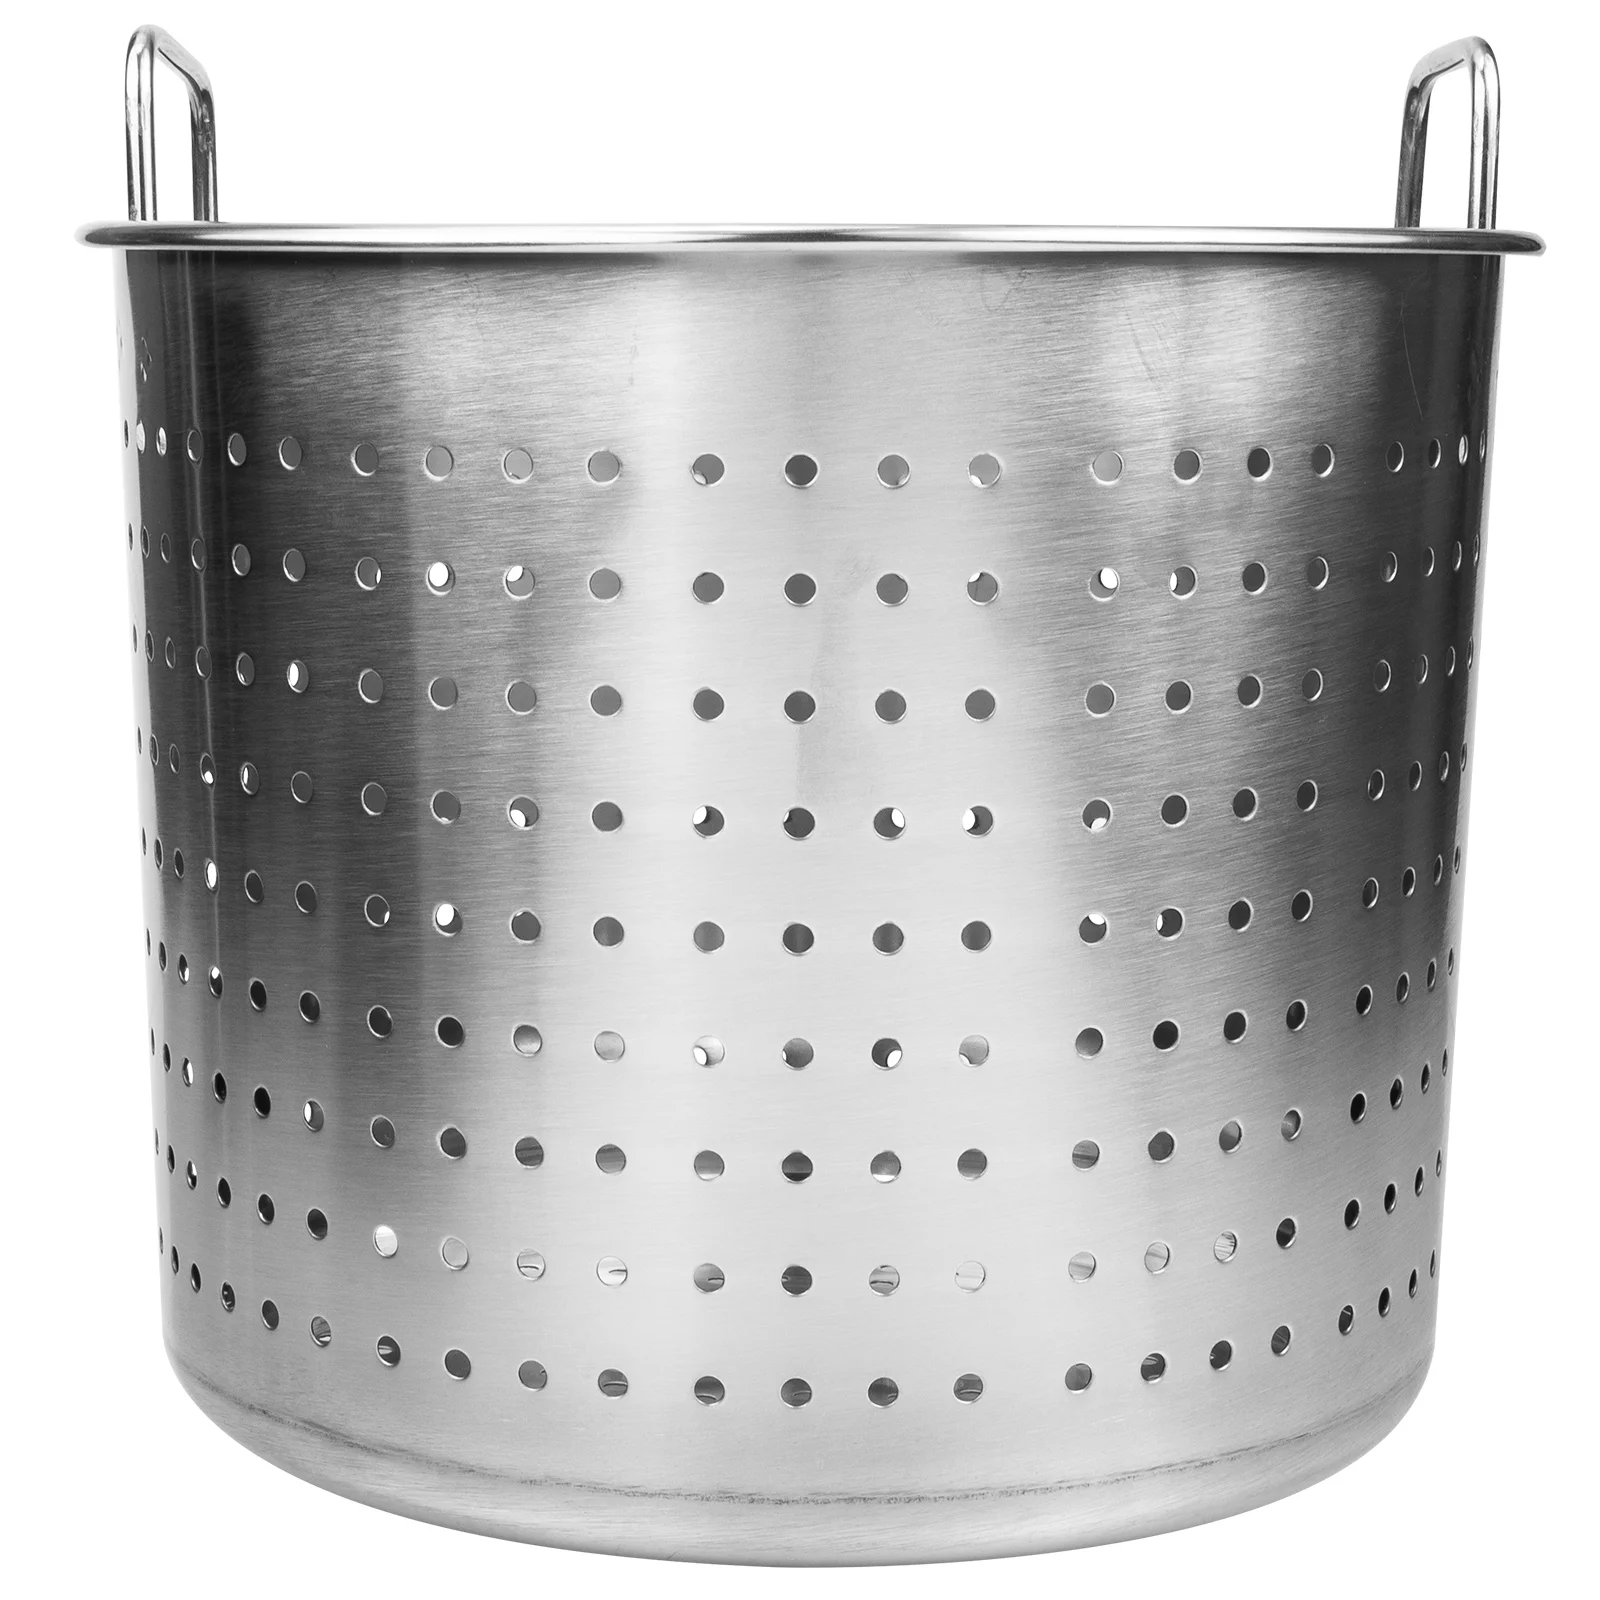 

Crayfish Boiler Stainless Steel Bucket Kitchen Supplies Crawfish Pot Leaky Large Stewed Frying Basket